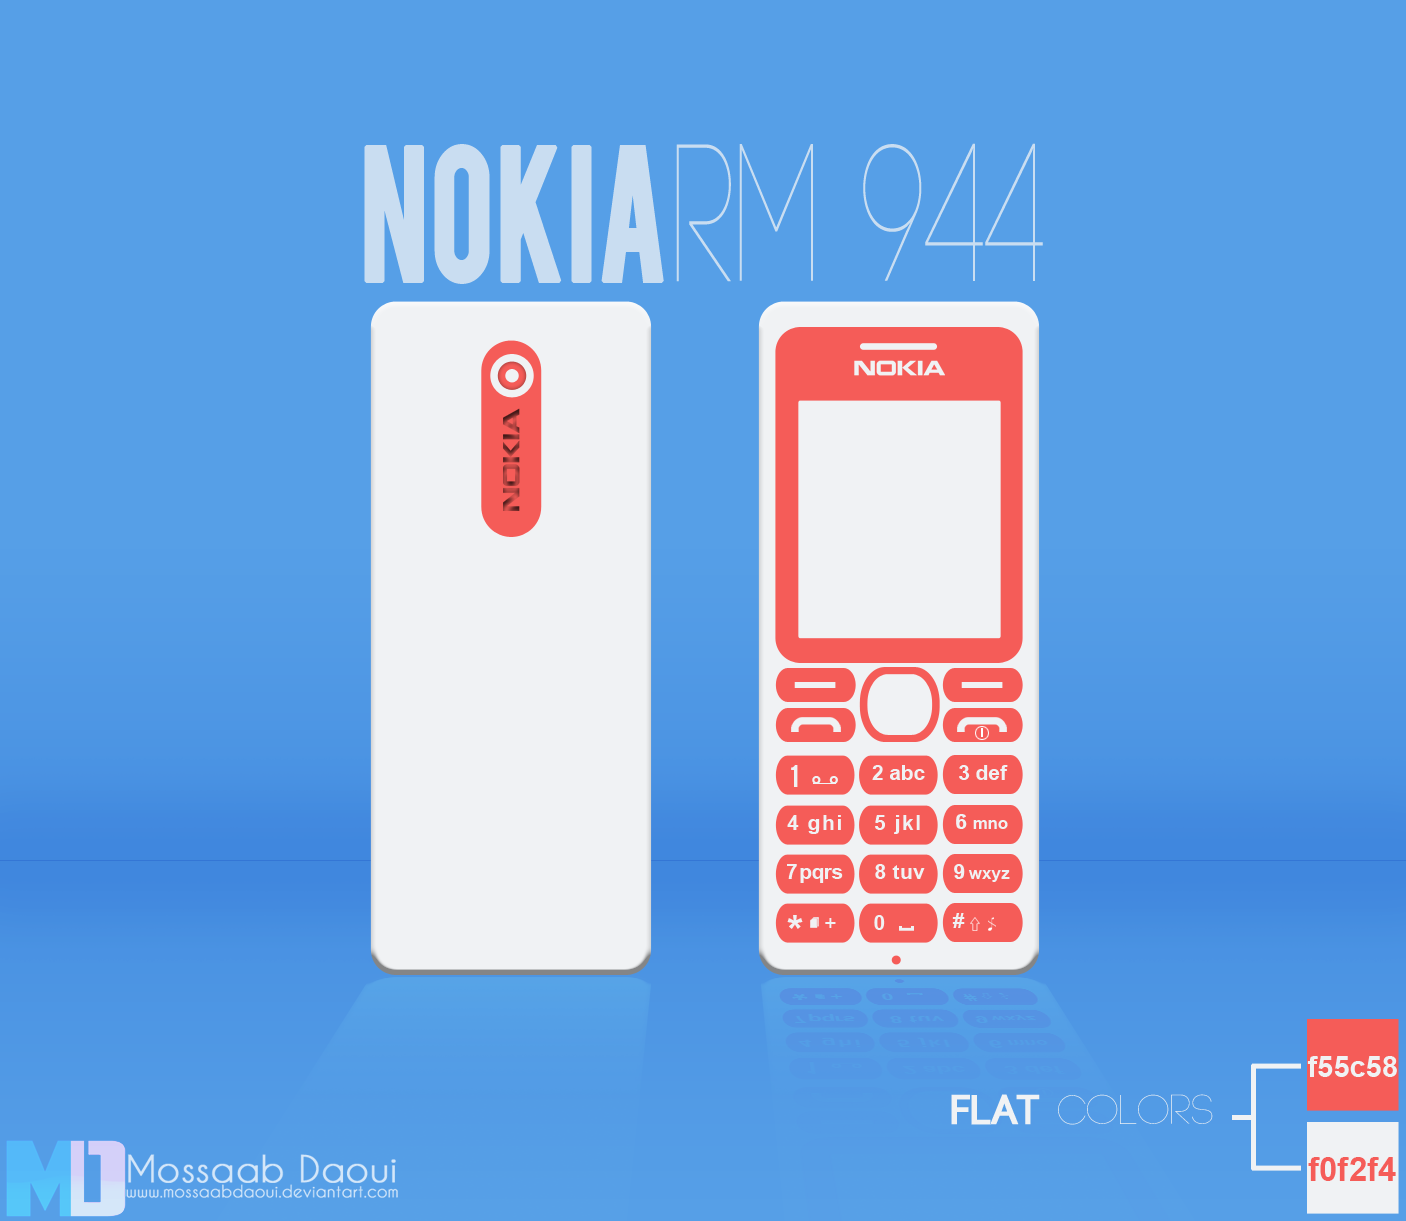 Nokia RM944 Flat Design